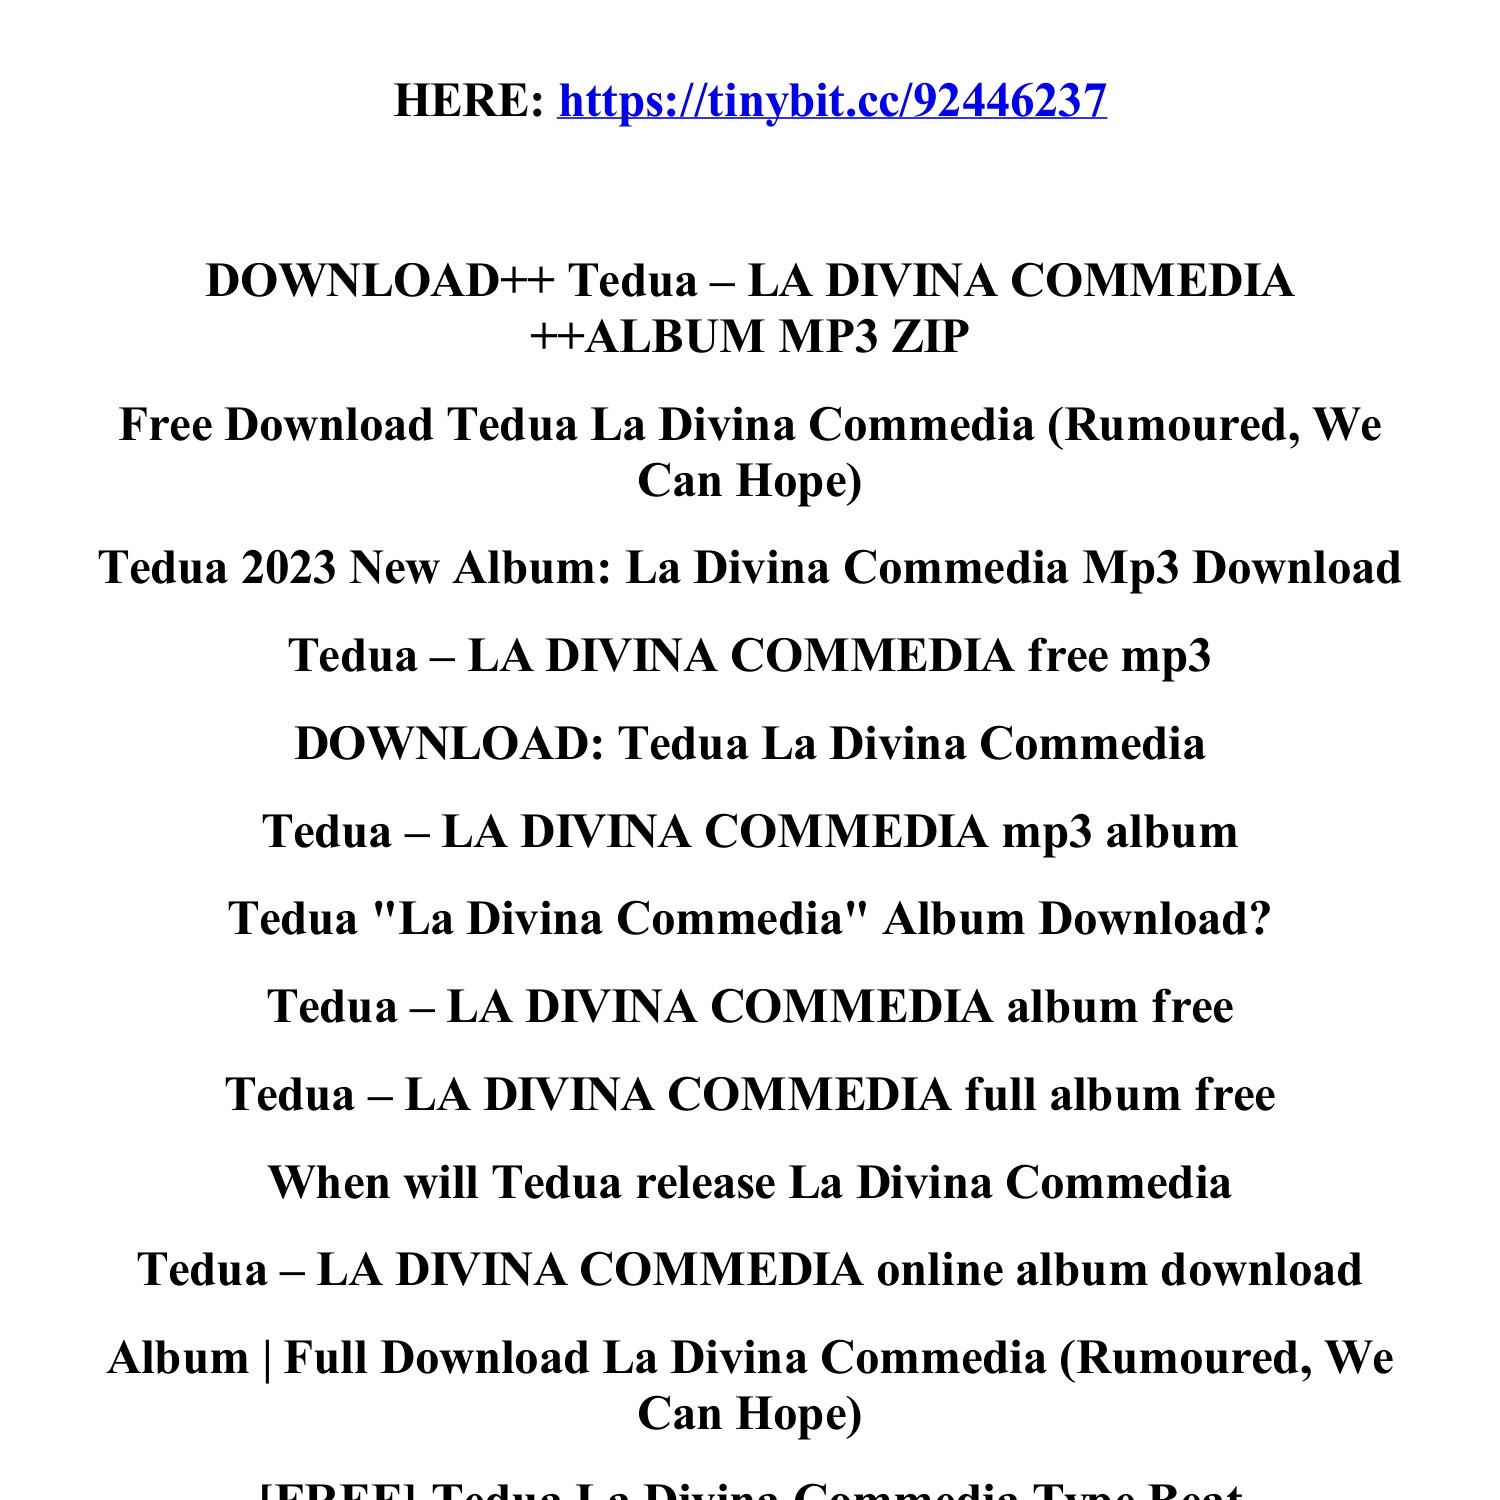 download_tedua_la_divina_commedia_album_mp3_zip.pdf